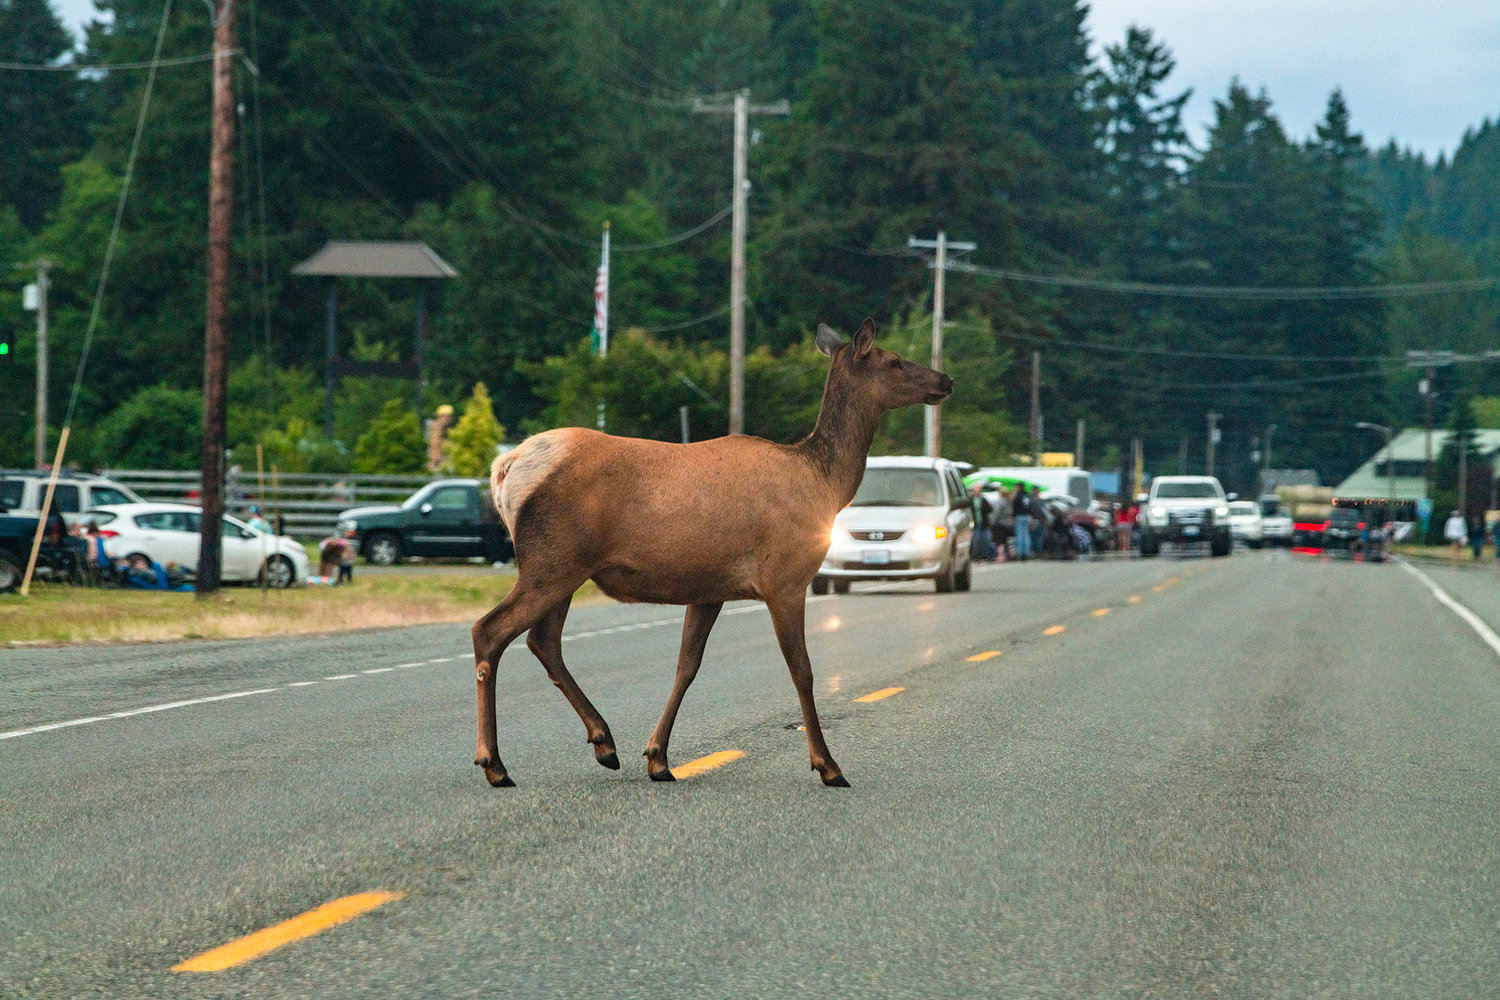 An elk crosses U.S. Highway 12 in Packwood as visitors prepare to watch a fireworks display Saturday evening.